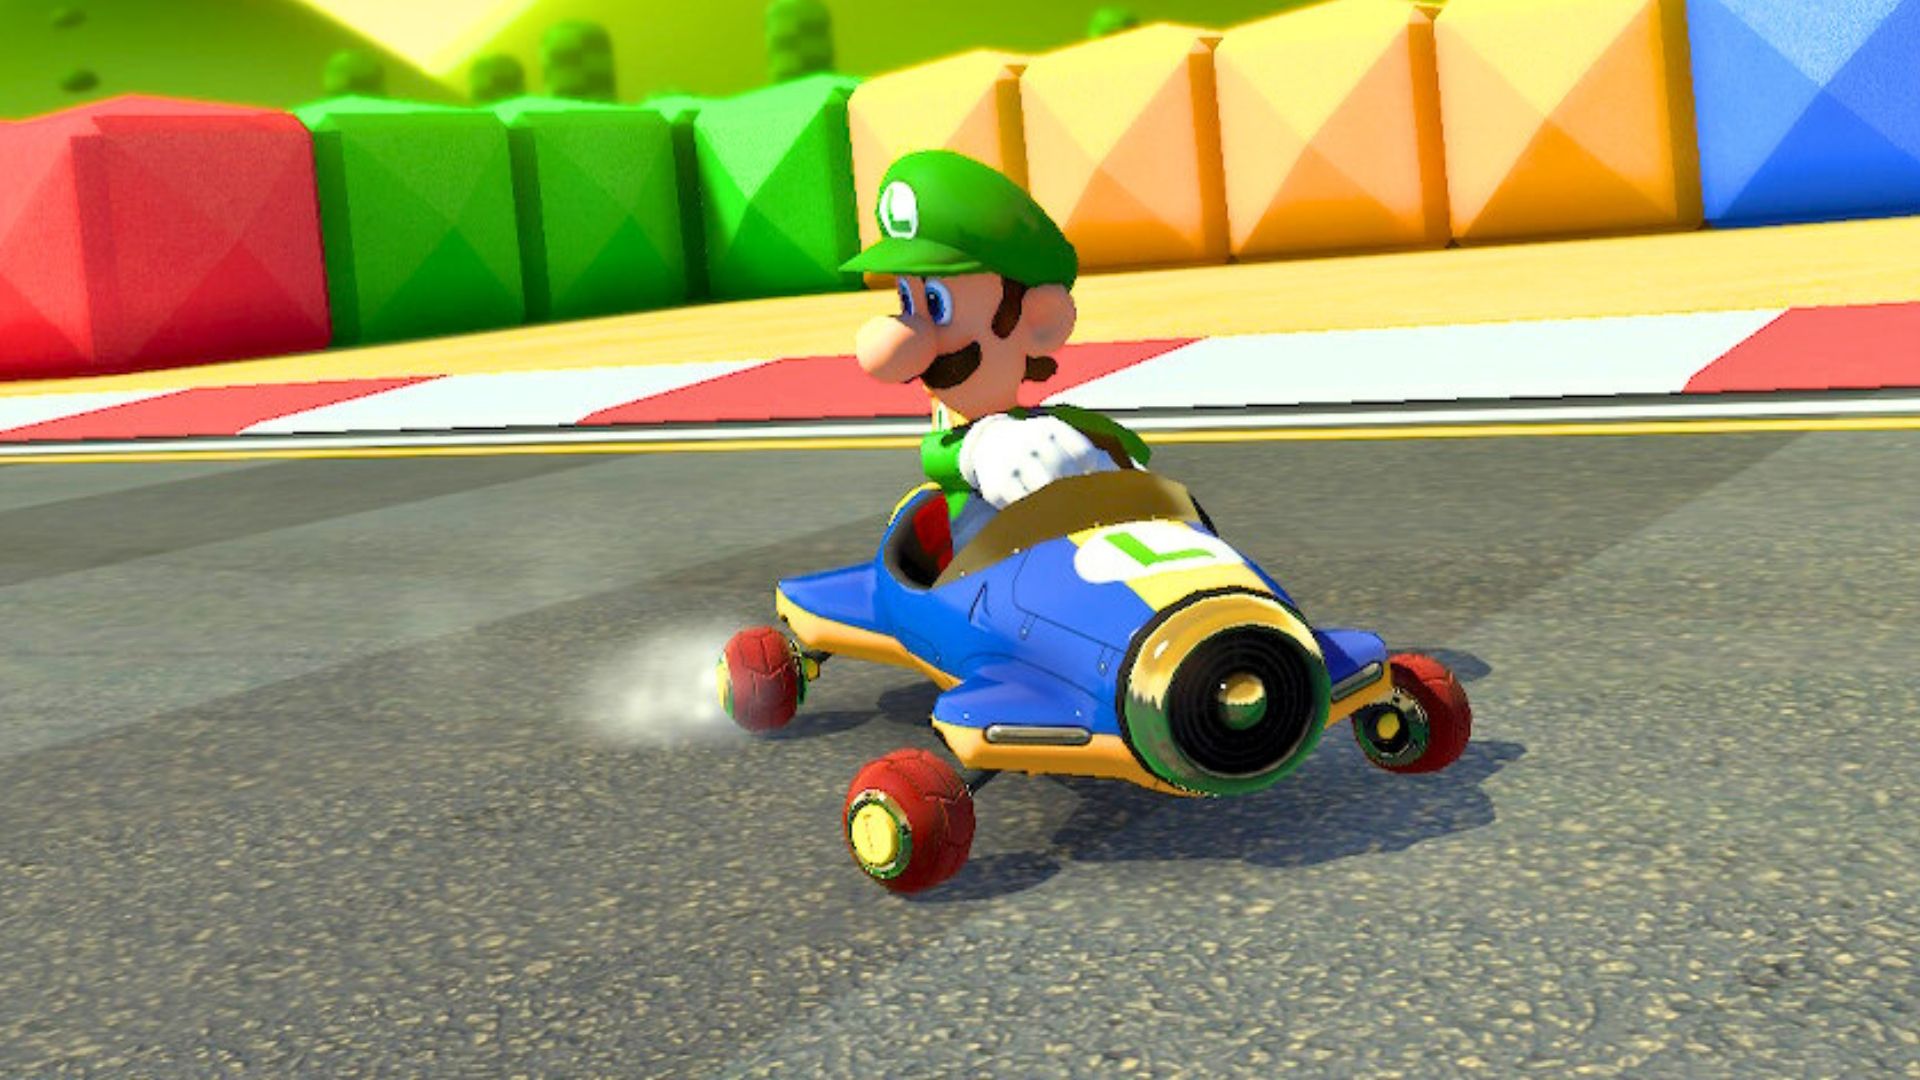 Mario Kart 8 Deluxe replay closeup of Luigi in Mach 8 Kart